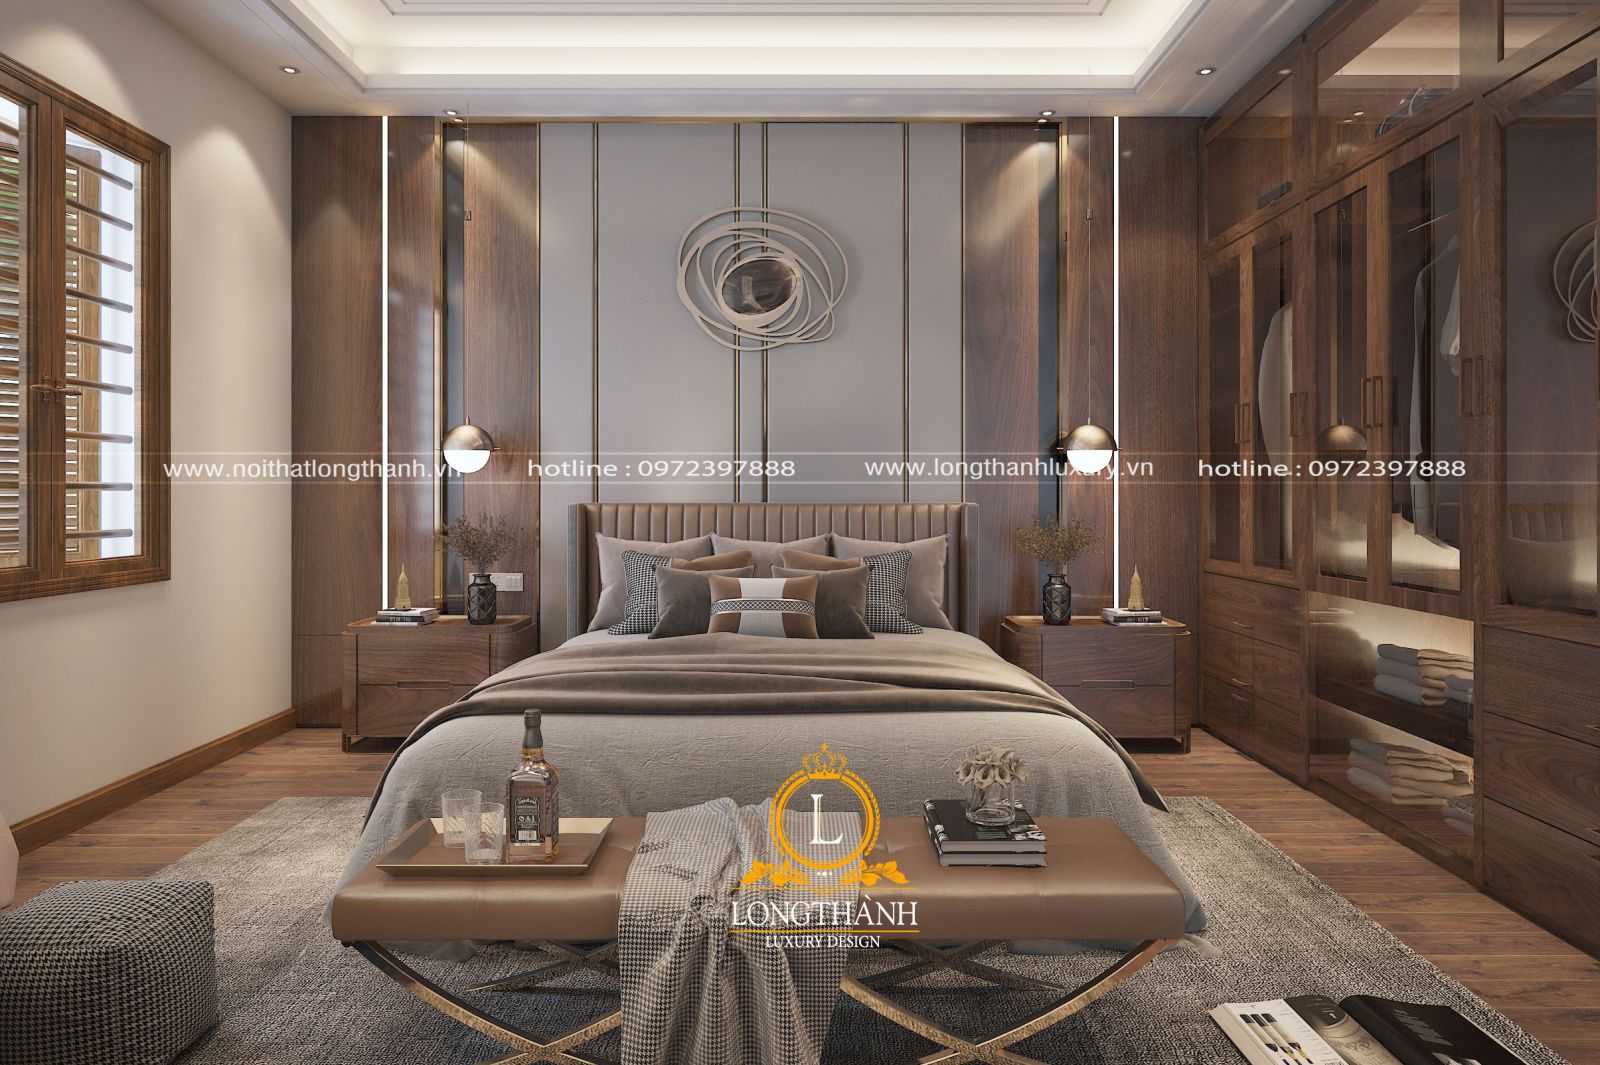 Thiết kế phòng ngủ 15m2 đẹp tuyệt cho biệt thự | Siêu thị nhà mẫu